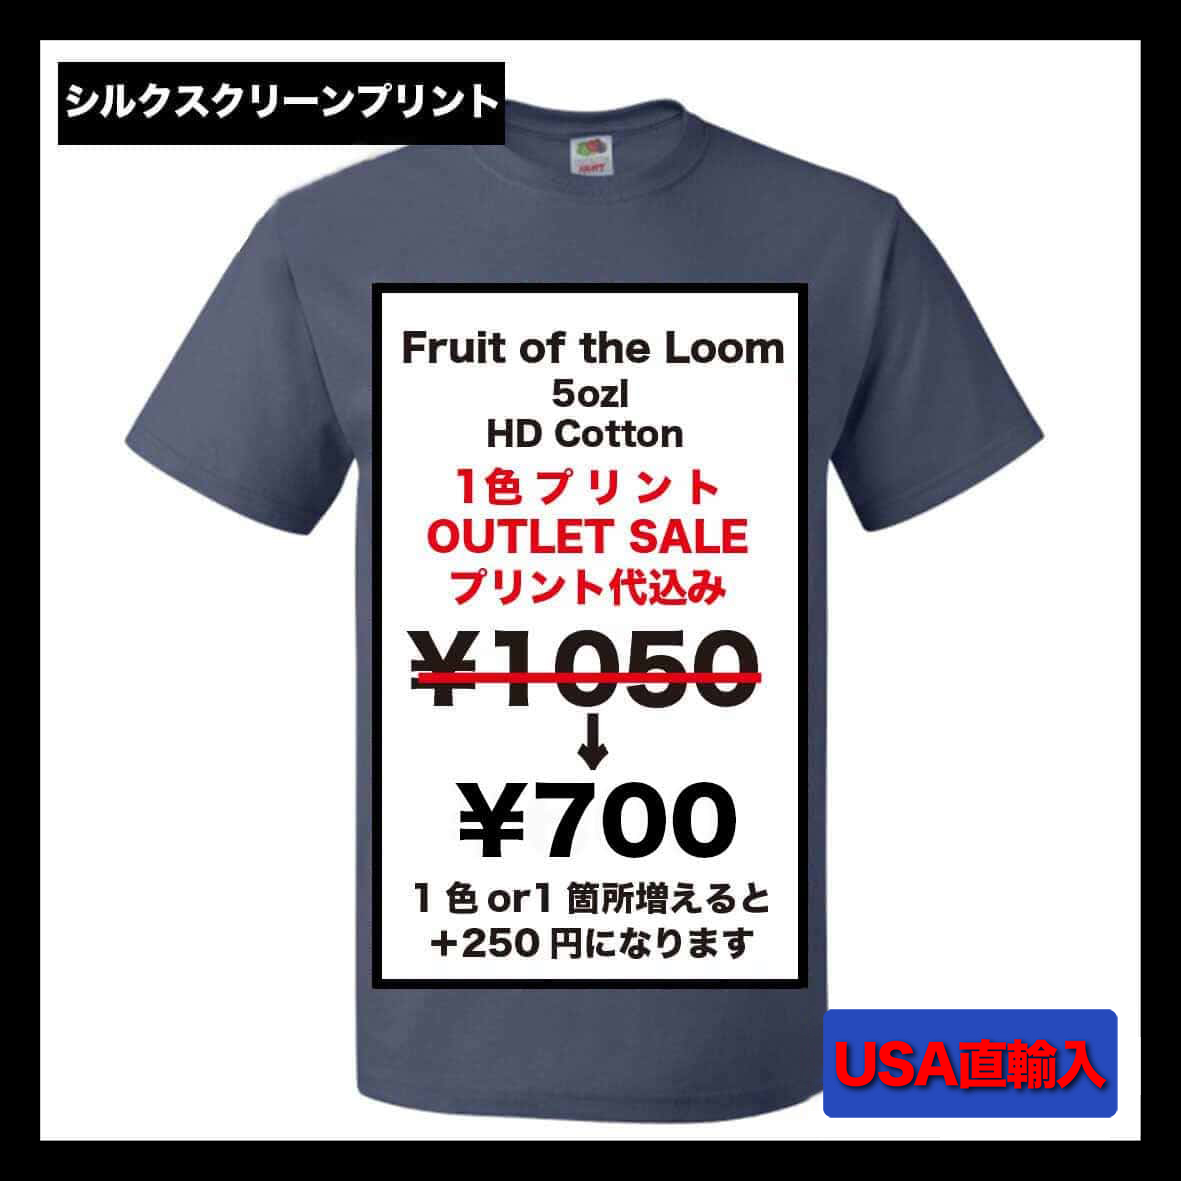 【在庫限りSALE】 FRUIT OF THE LOOM フルーツオブザルーム 5.0 oz HD Cotton Short Sleeve T-Shirt (品番US3930R)